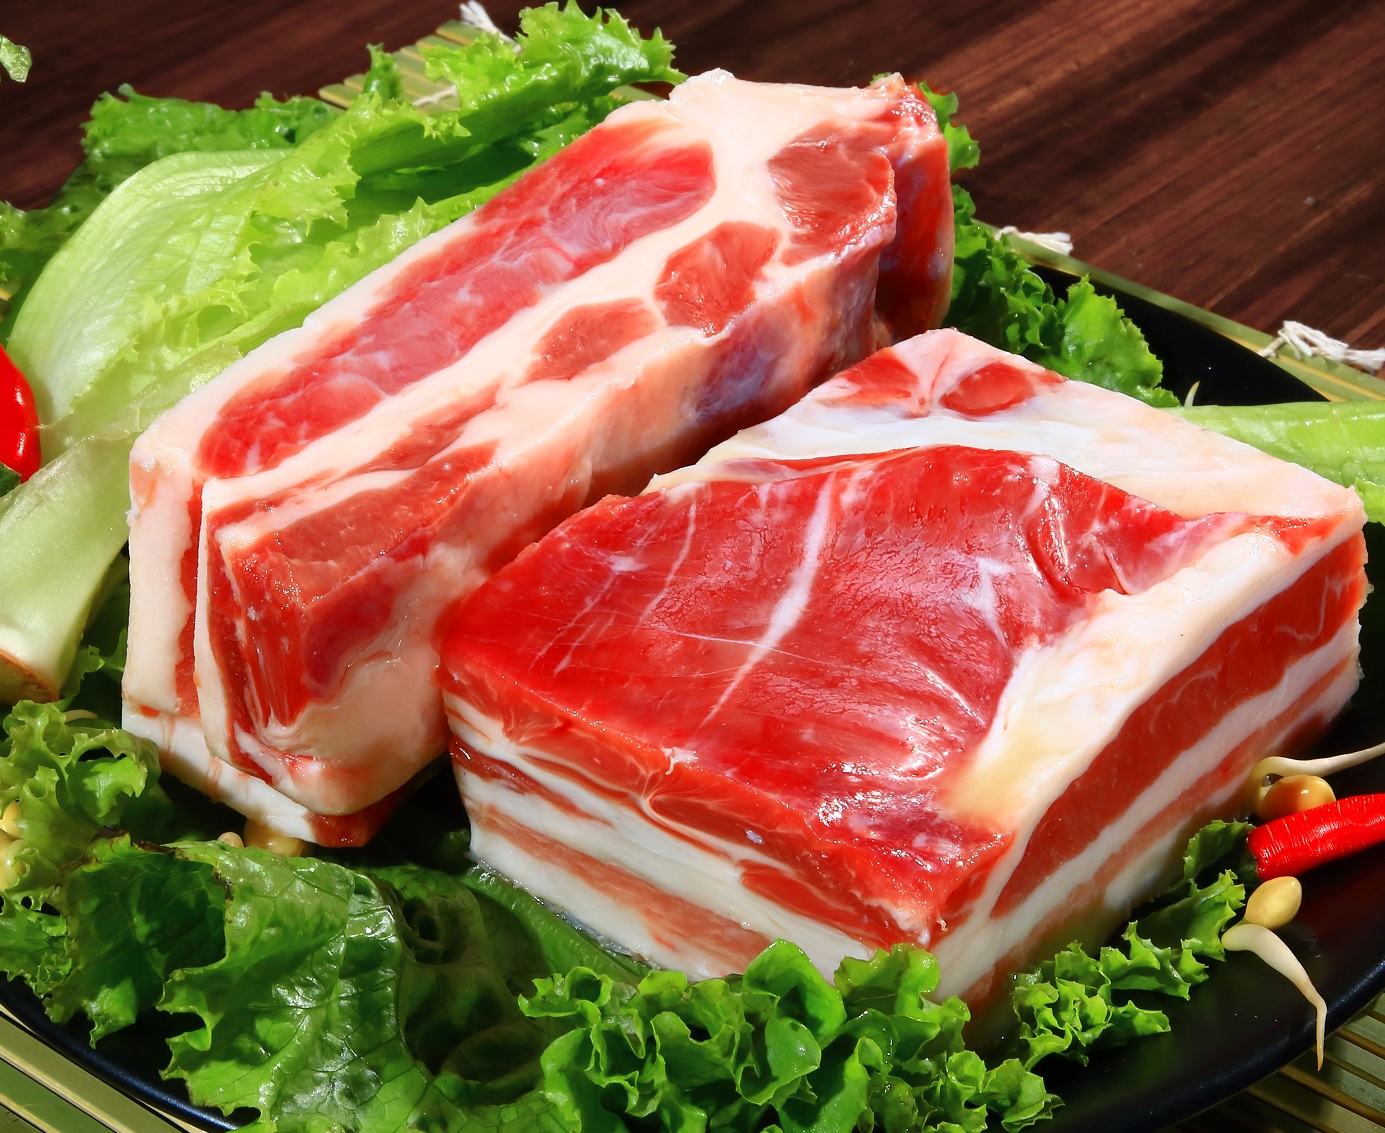 进口猪肉价格跌超千元 禽肉却节节攀升